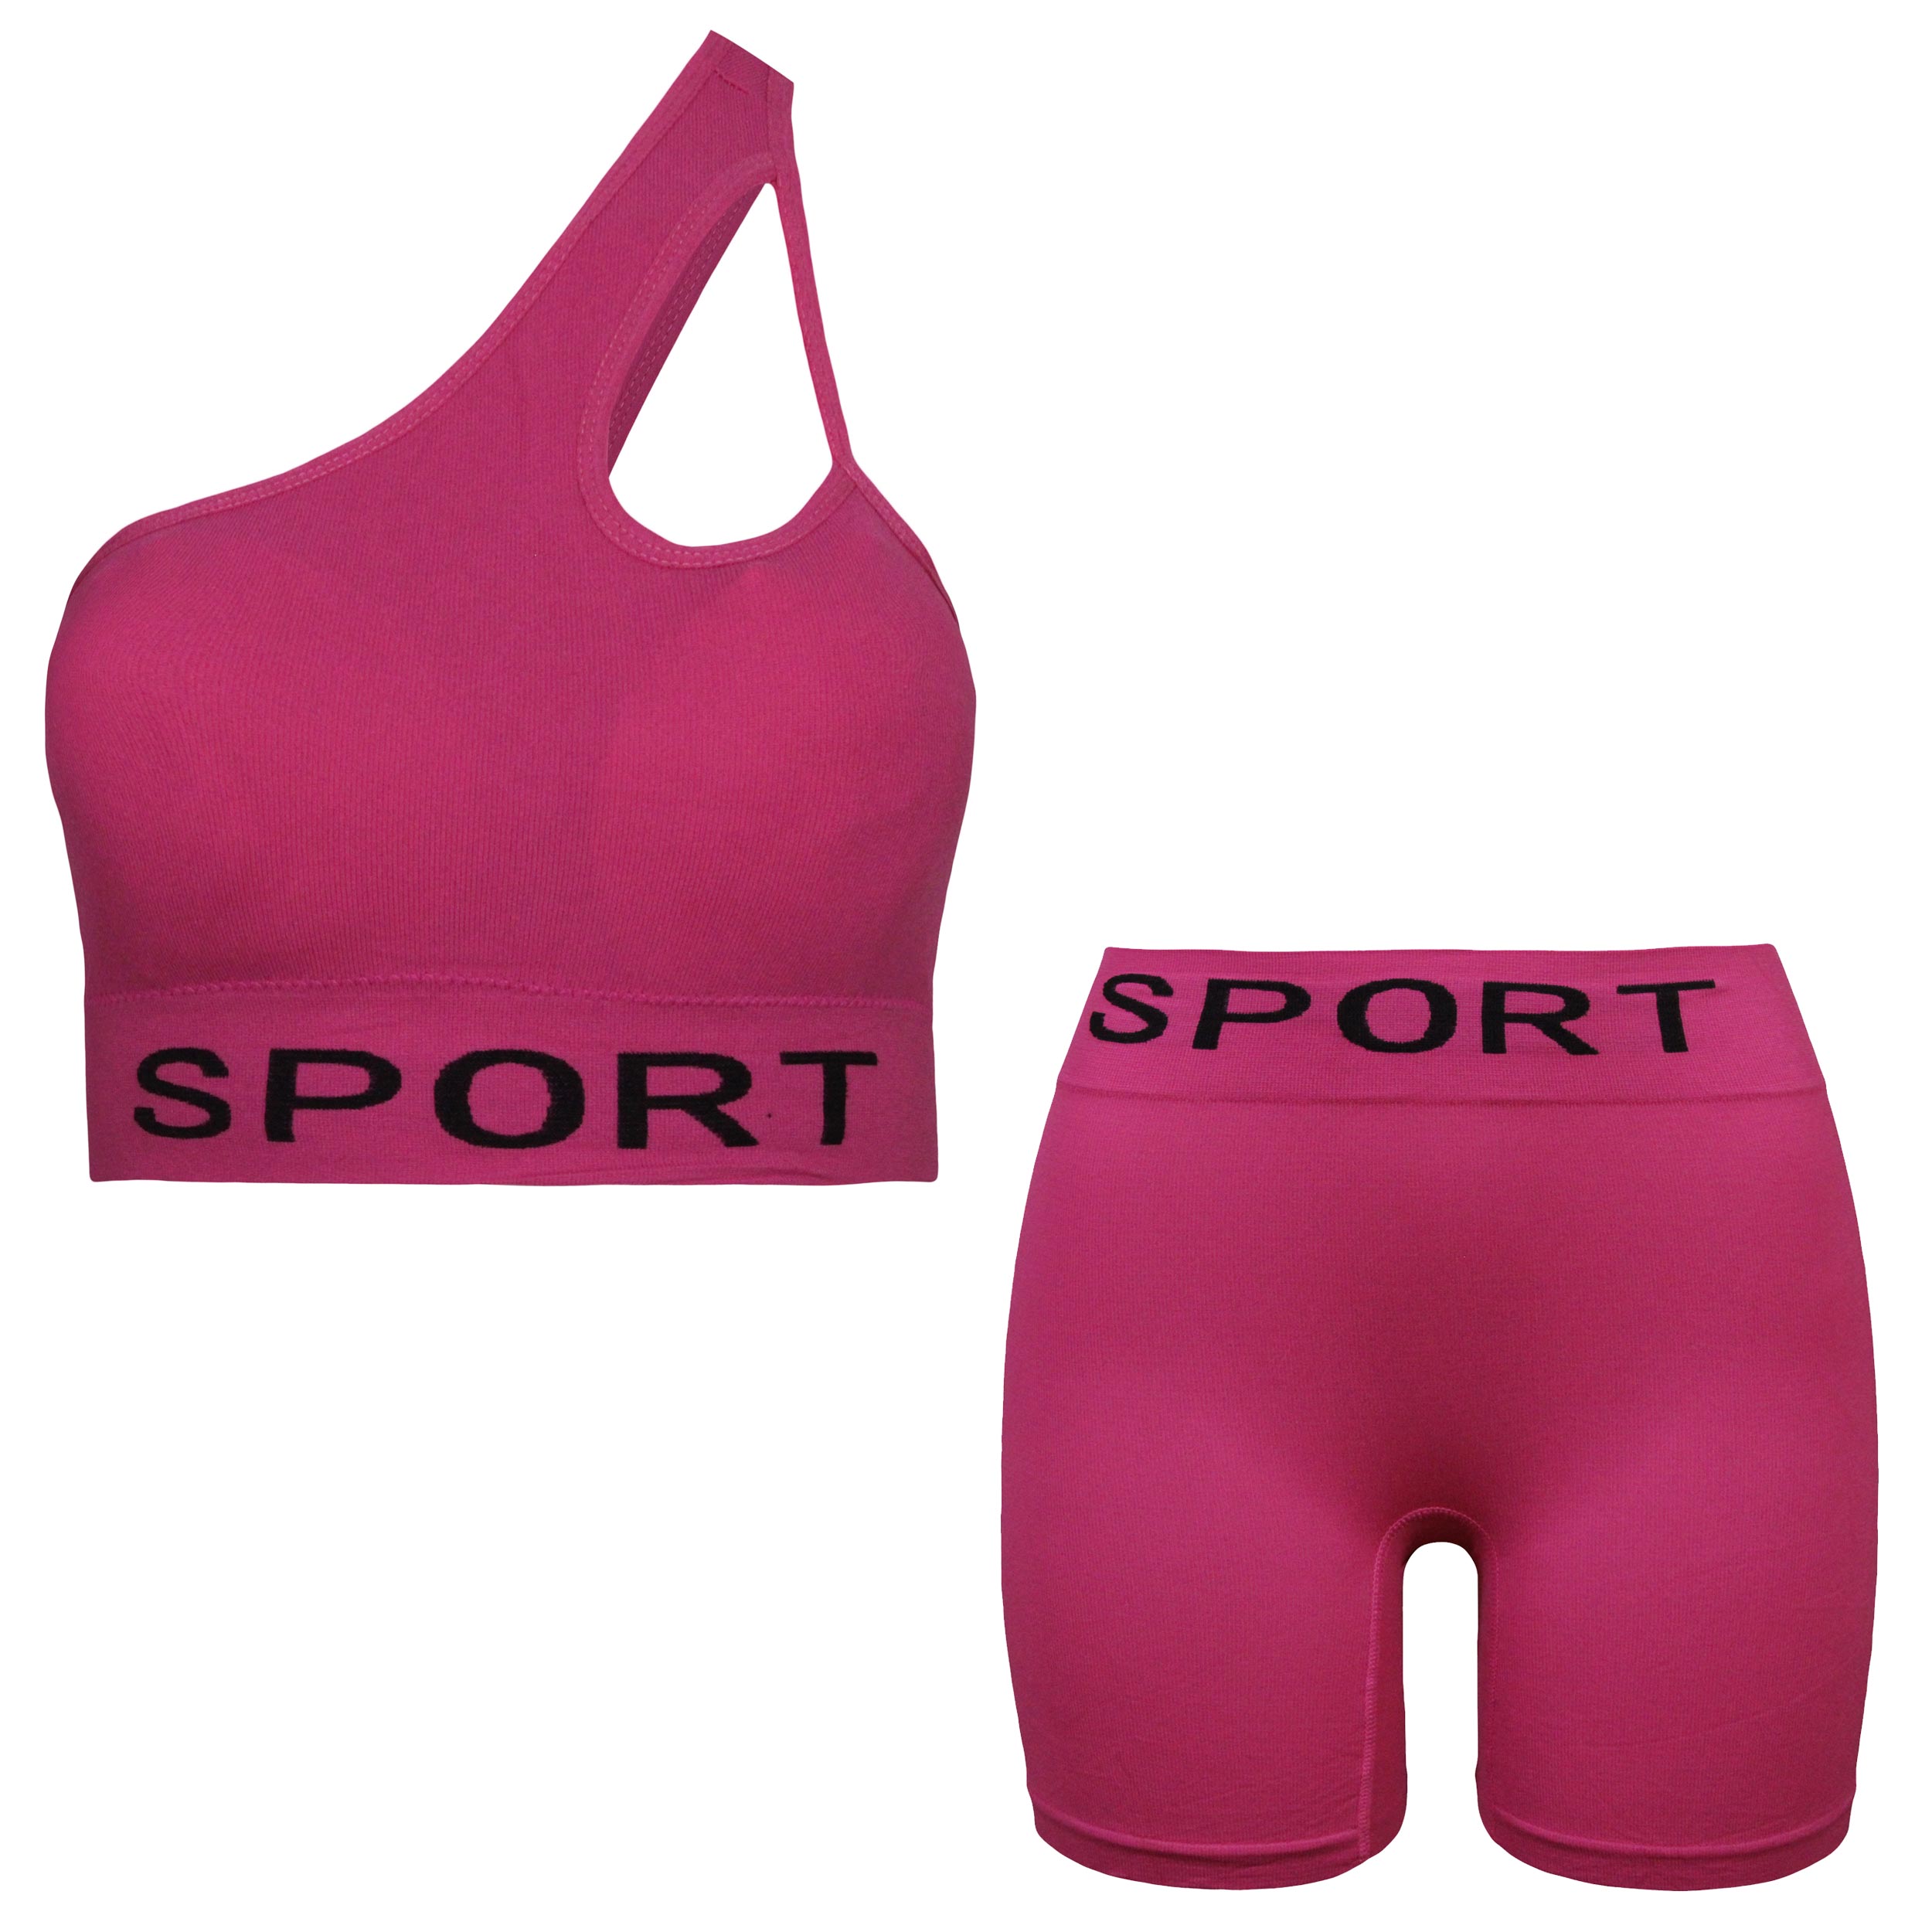 ست نیم تنه و شلوارک ورزشی زنانه ماییلدا مدل 4465 رنگ صورتی